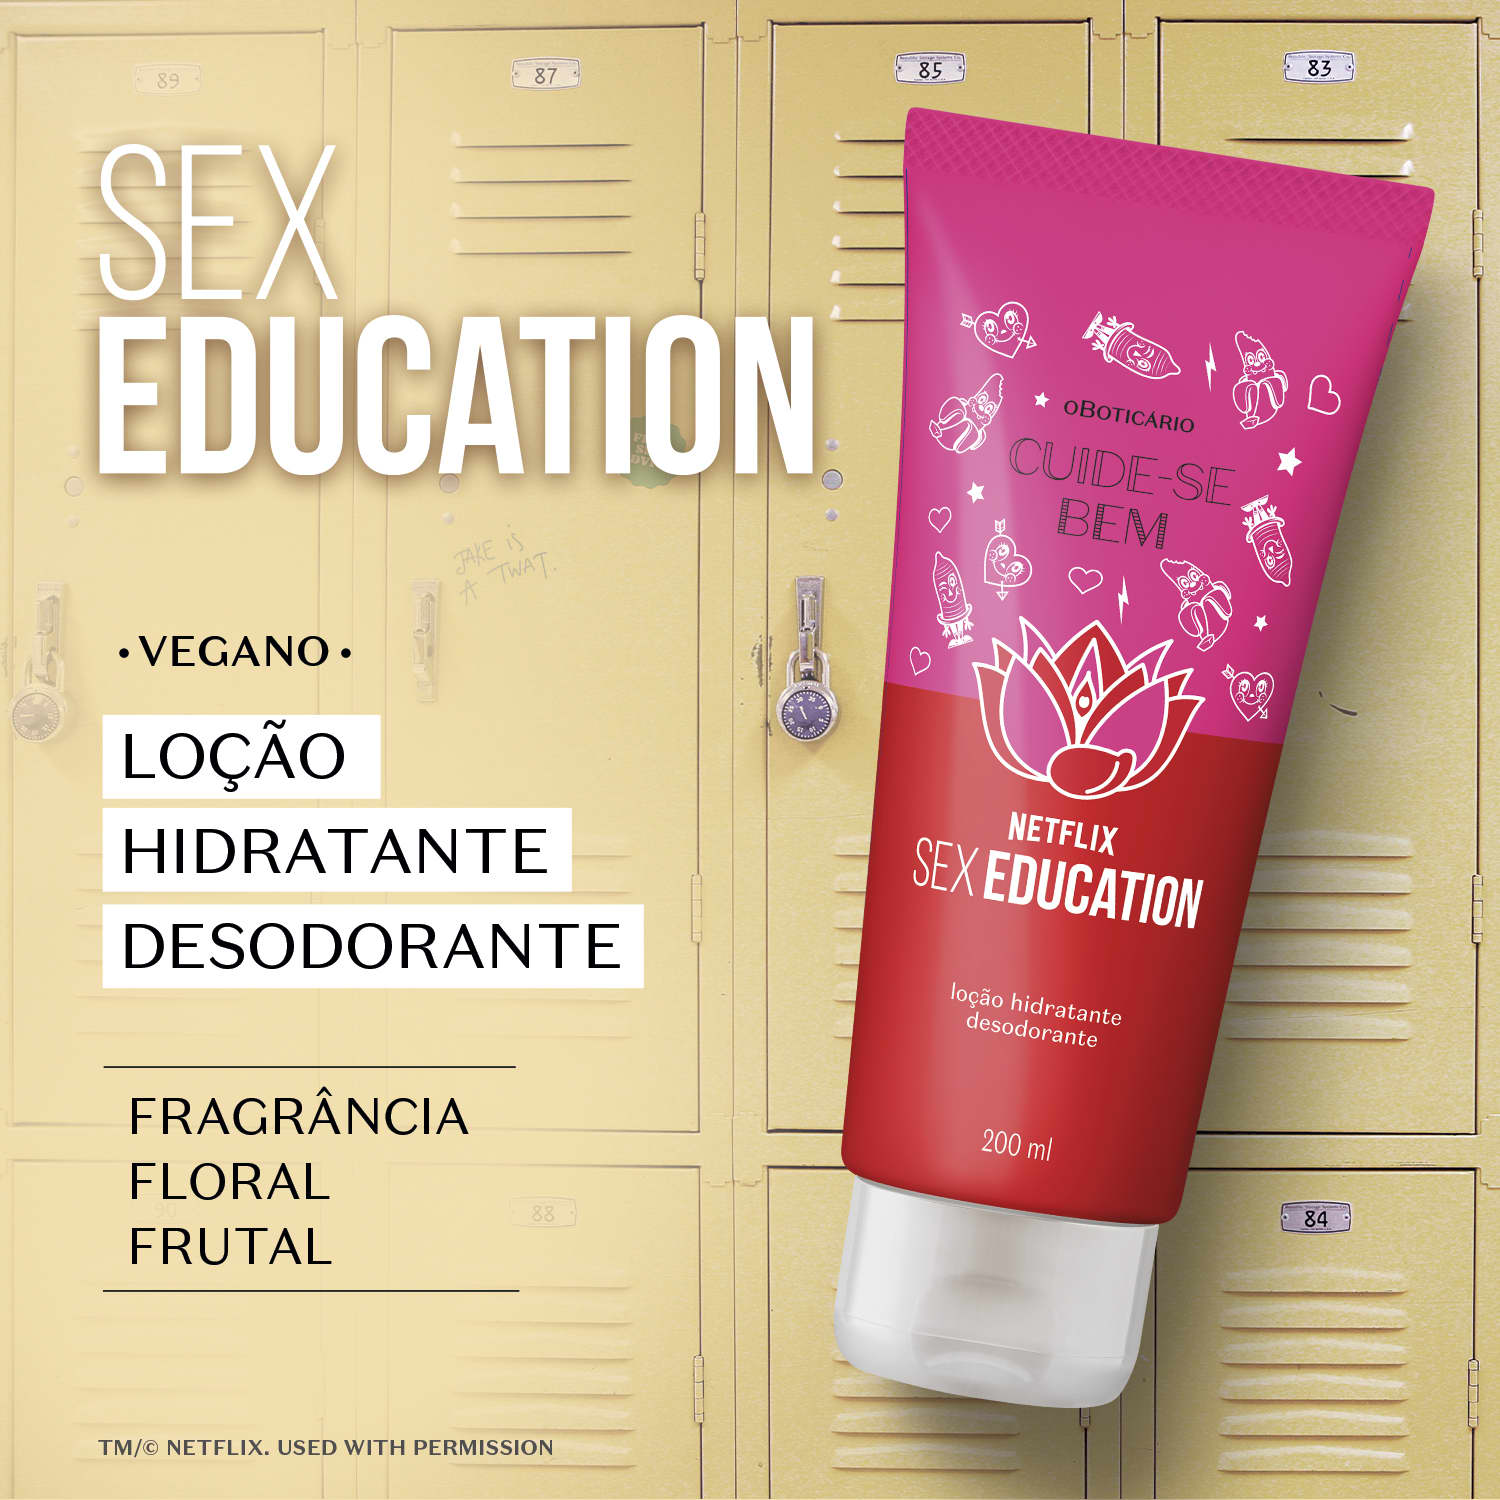 Loção Hidratante Desodorante Cuide Se Bem Netflix Sex Education 200ml